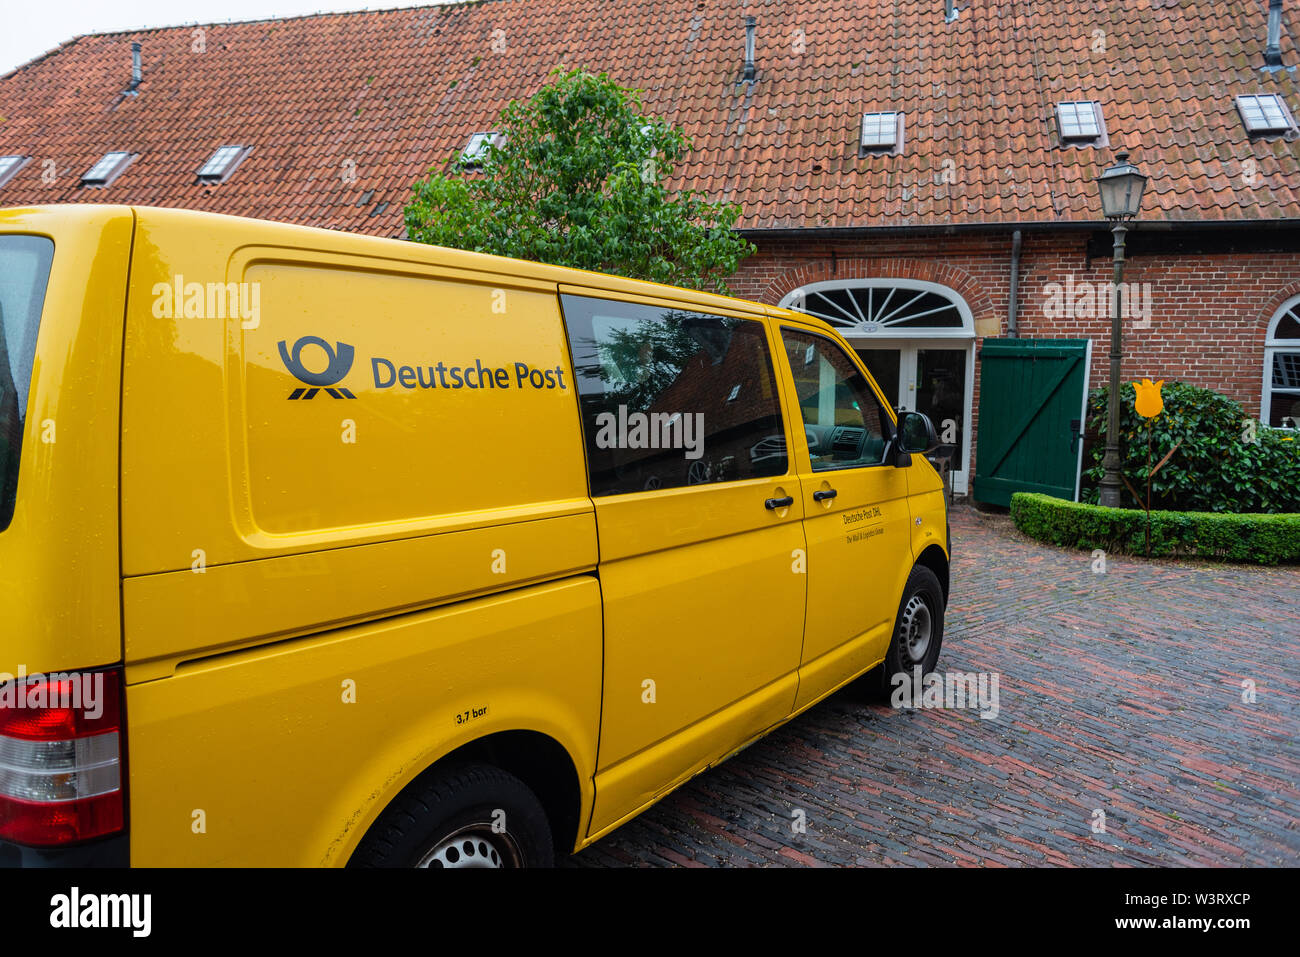 Hude, Niedersachsen, Deutschland - Juli 13, 2019 Klosterruine mit einem Post bus Hude - Bilder Stockfoto